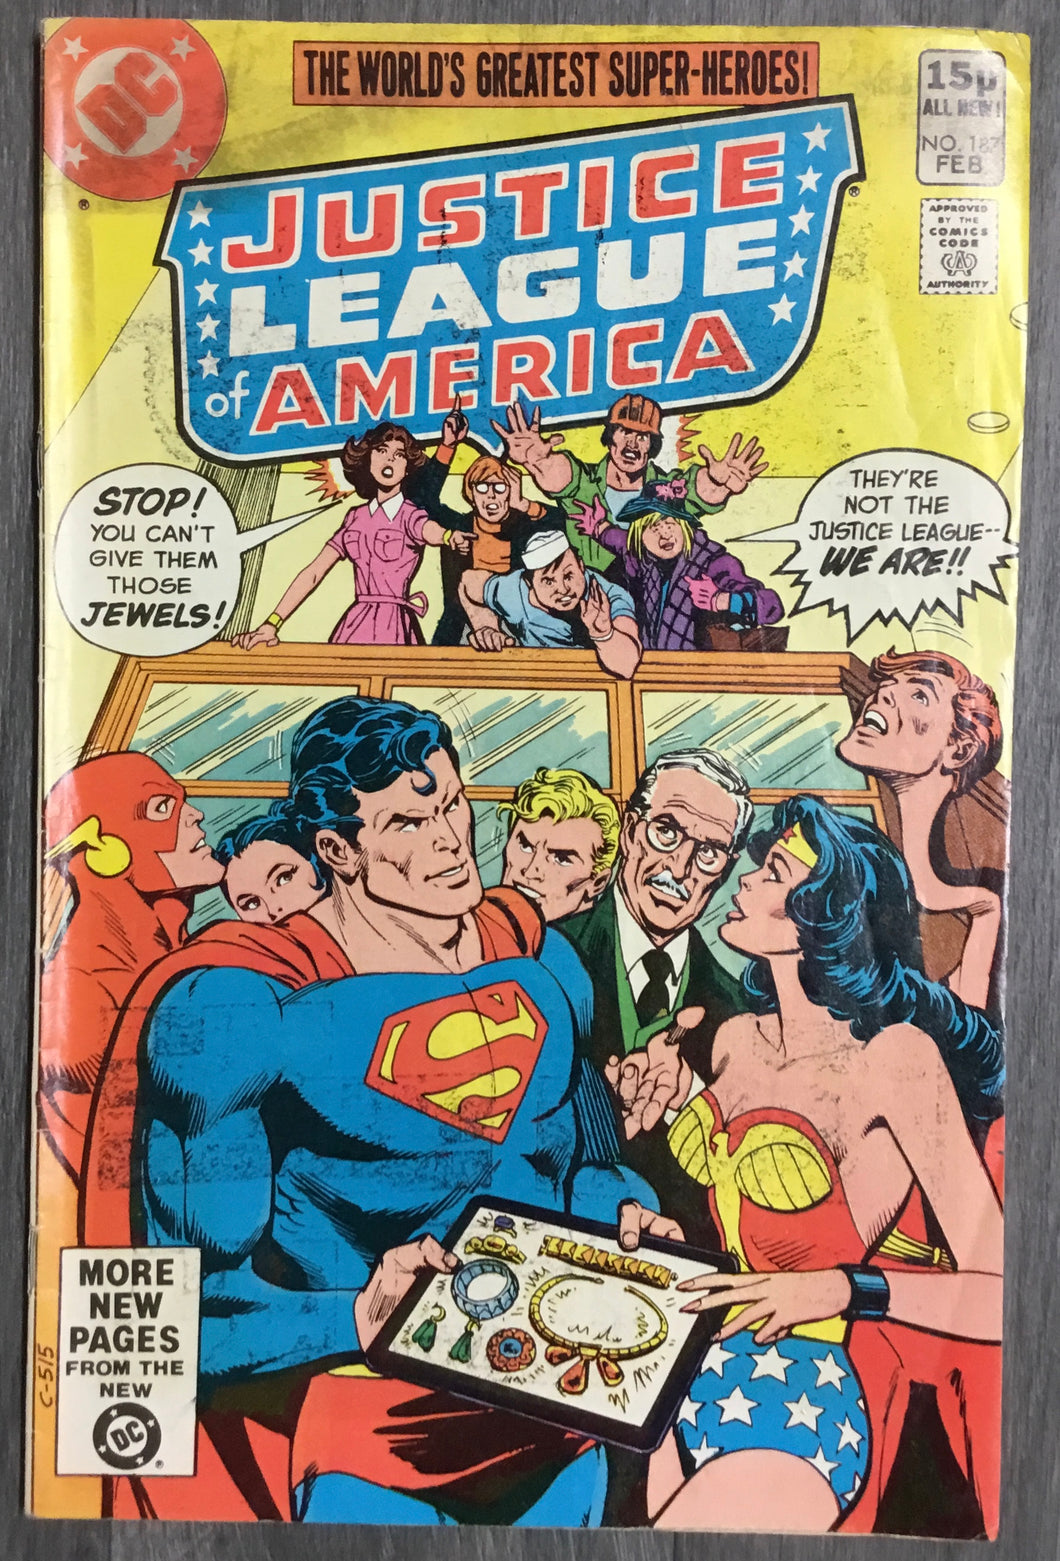 Justice League of America No. #187 1981 DC Comics